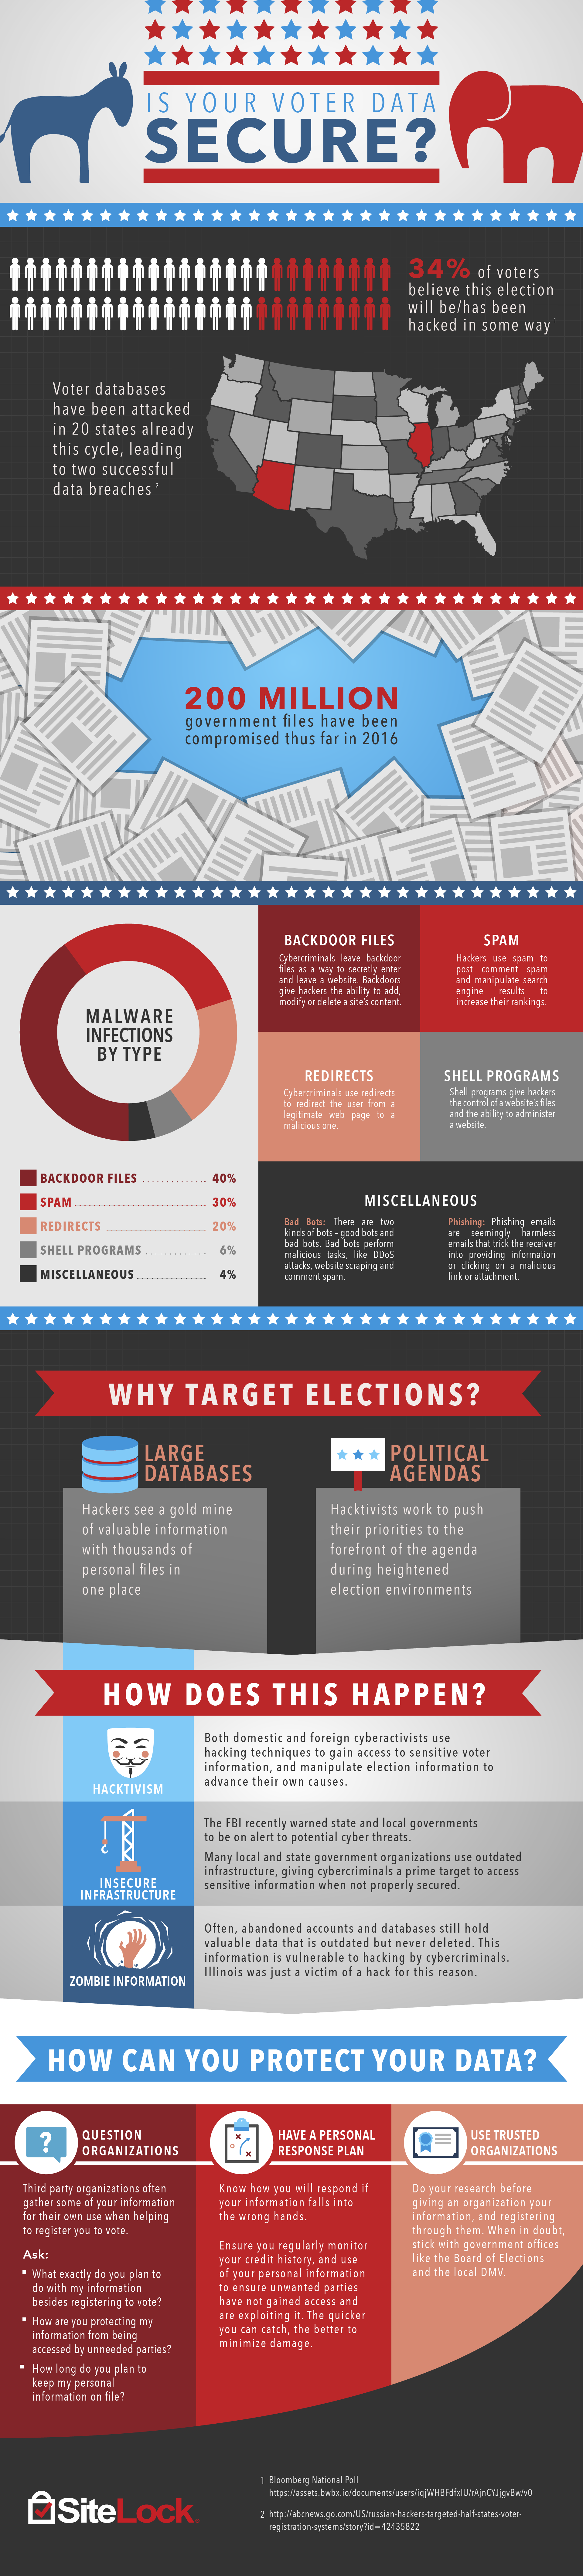 sitelock_election_infographic